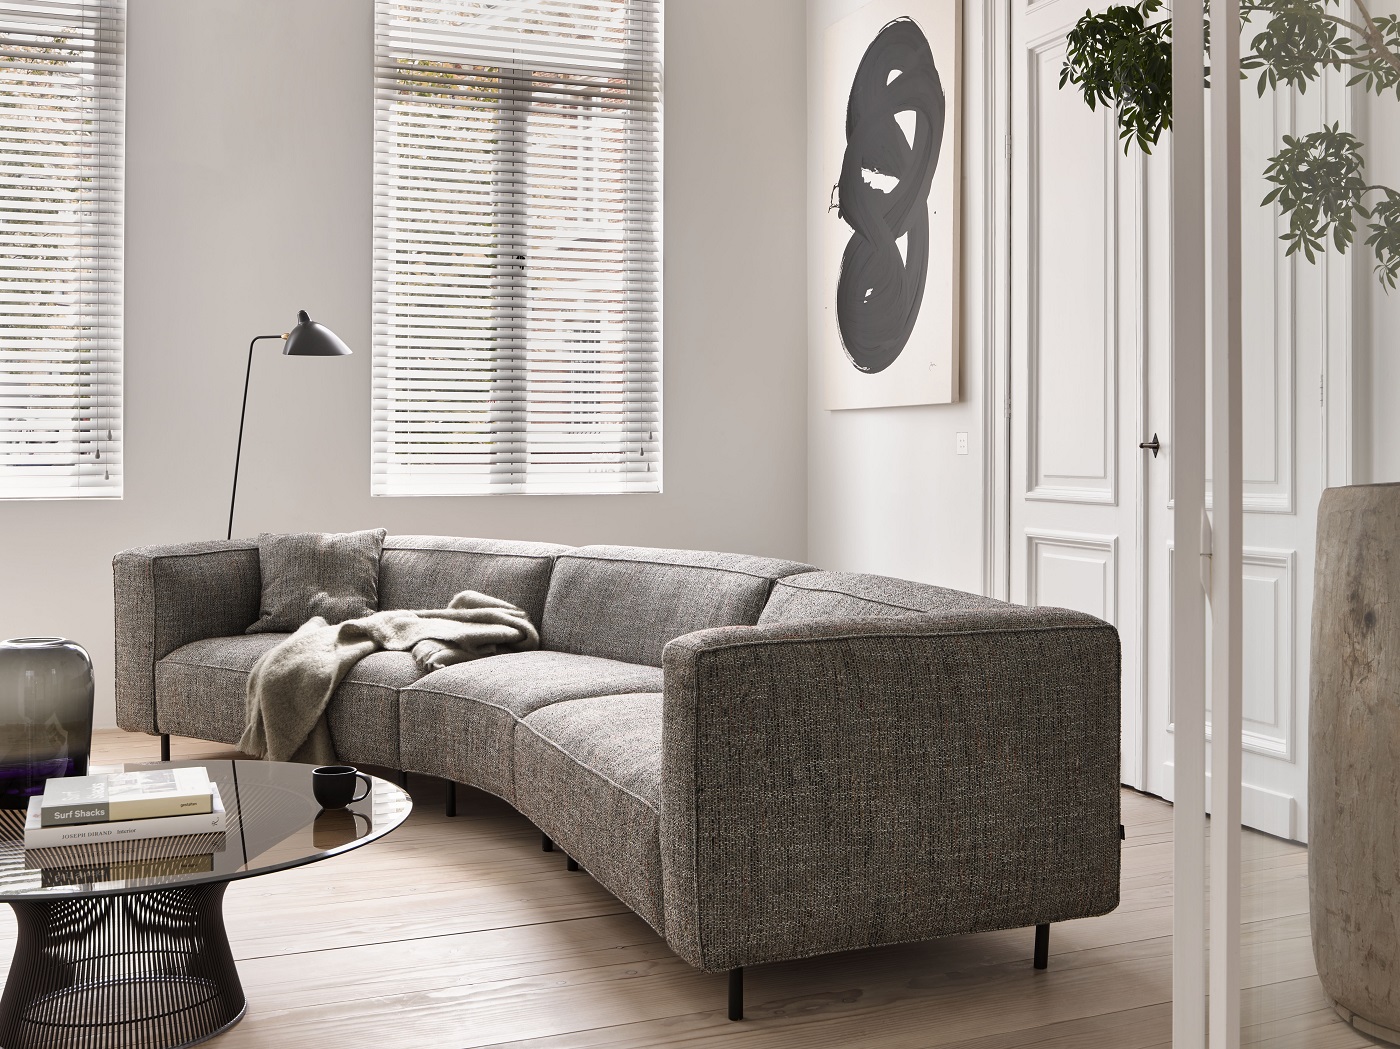 Haal luxe in huis met design meubelen